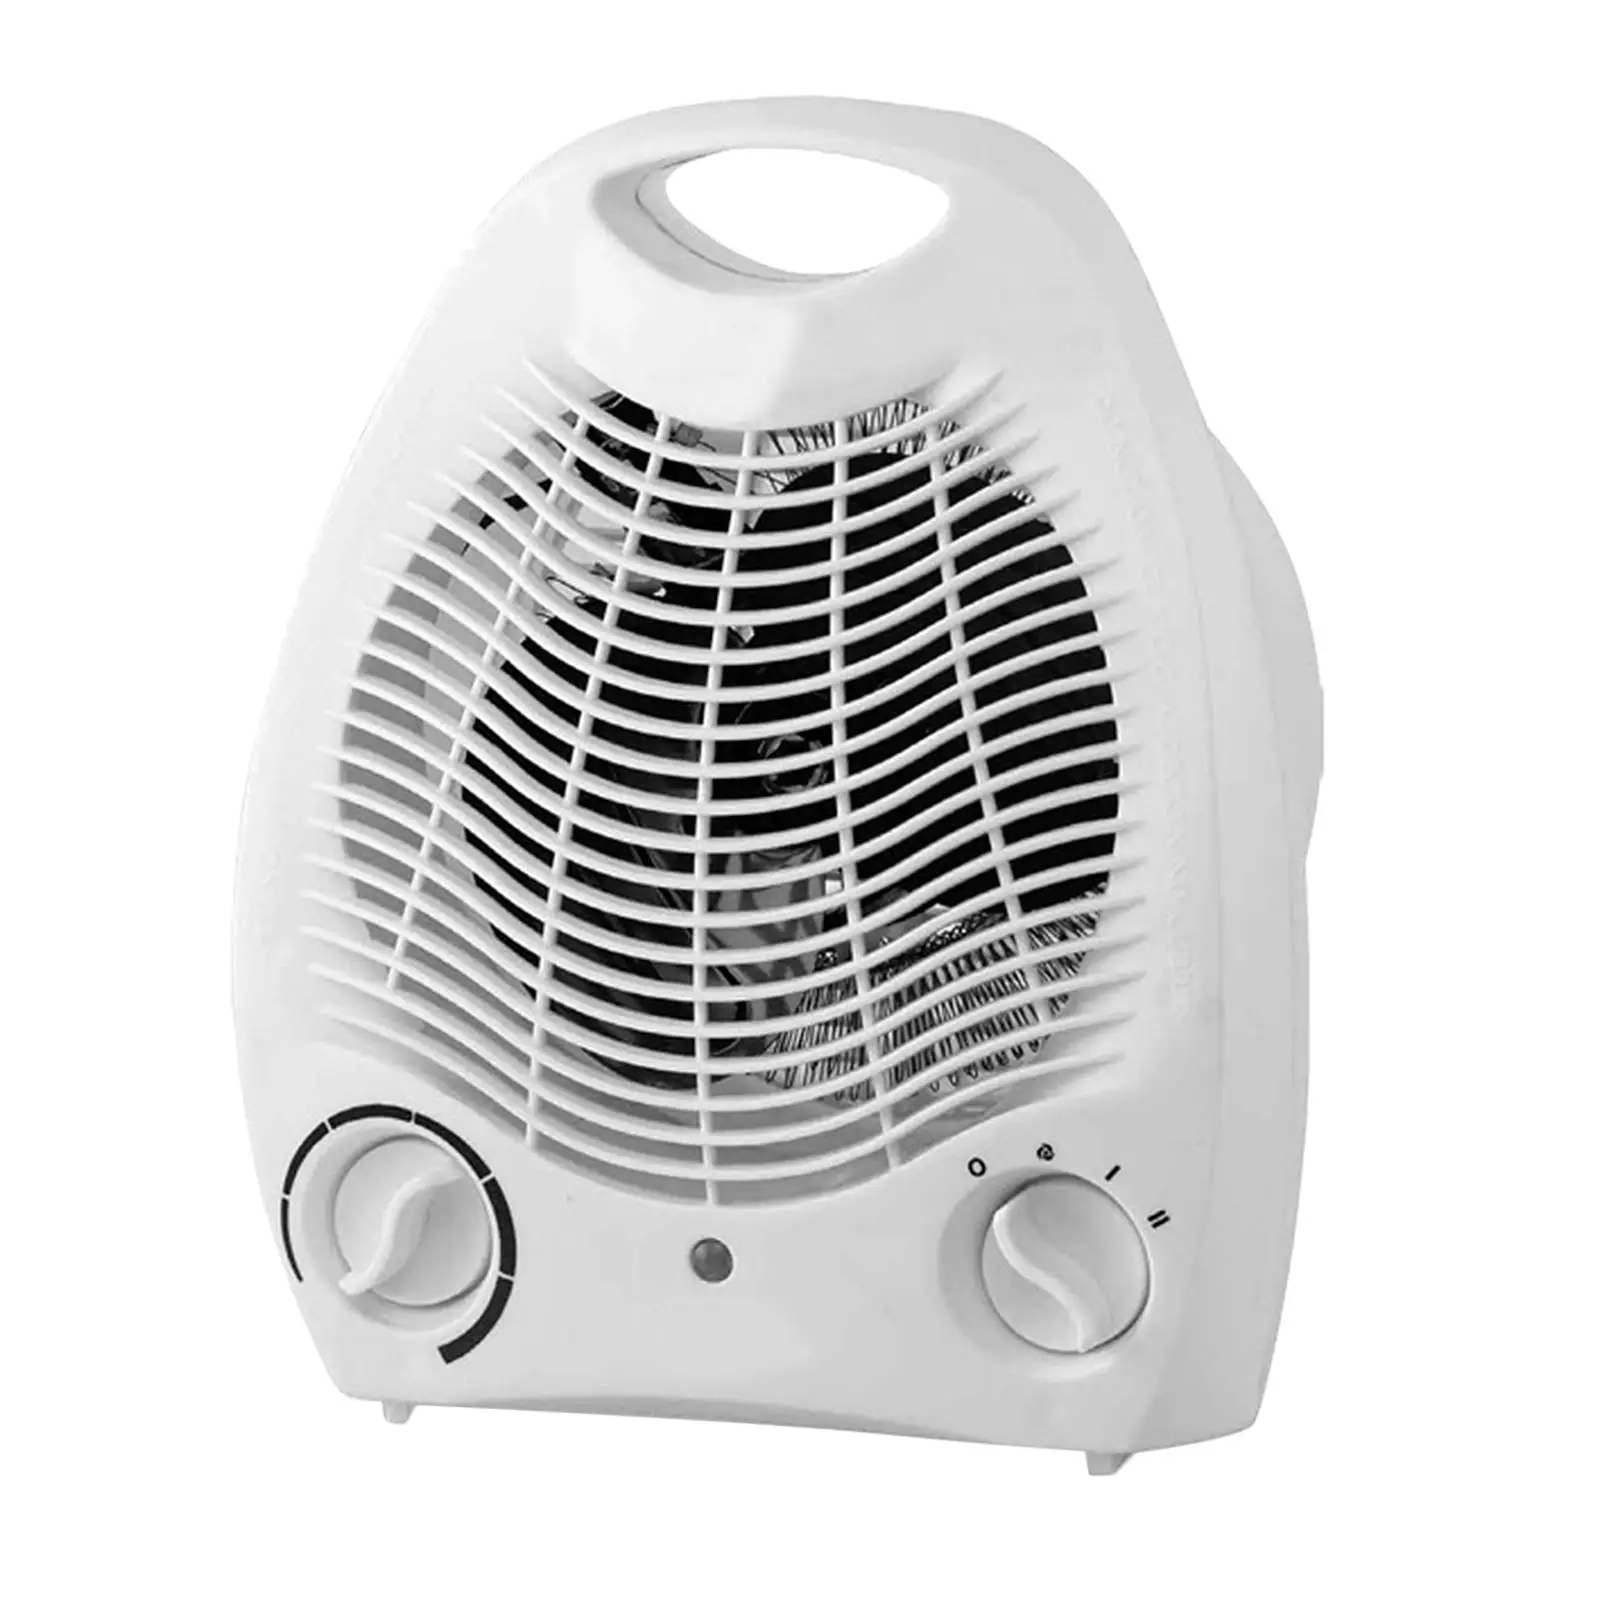 Portable Fan Heater, Adjustable  Switch, Overheat , 3 Heat Settings, 1000-2000 W, White